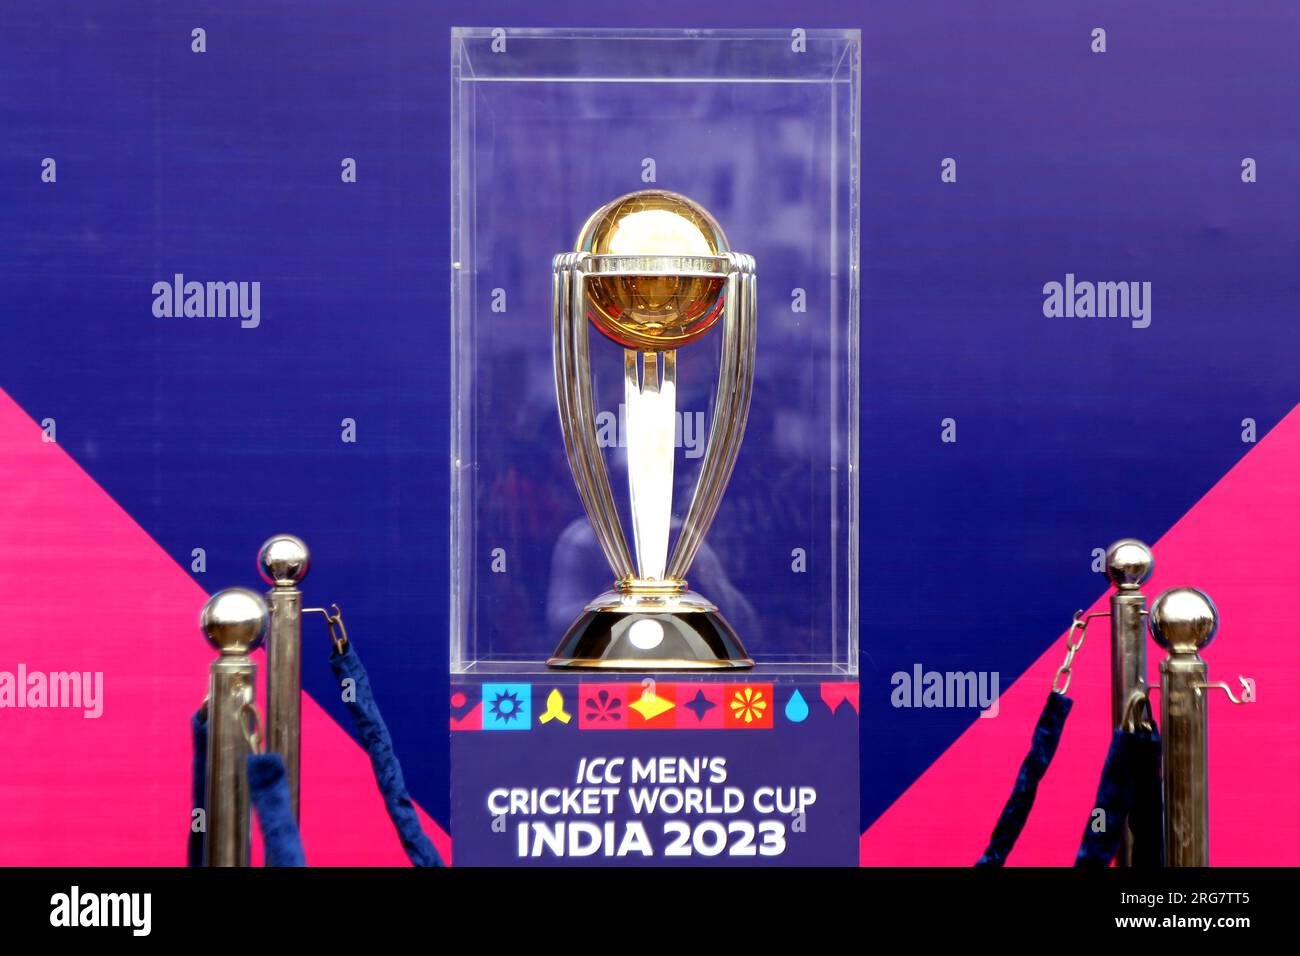 Le circuit du trophée de la coupe du monde de cricket ICC 2023 est arrivé au Bangladesh. Le prestigieux trophée est prévu pour visiter divers endroits dans le pays Banque D'Images